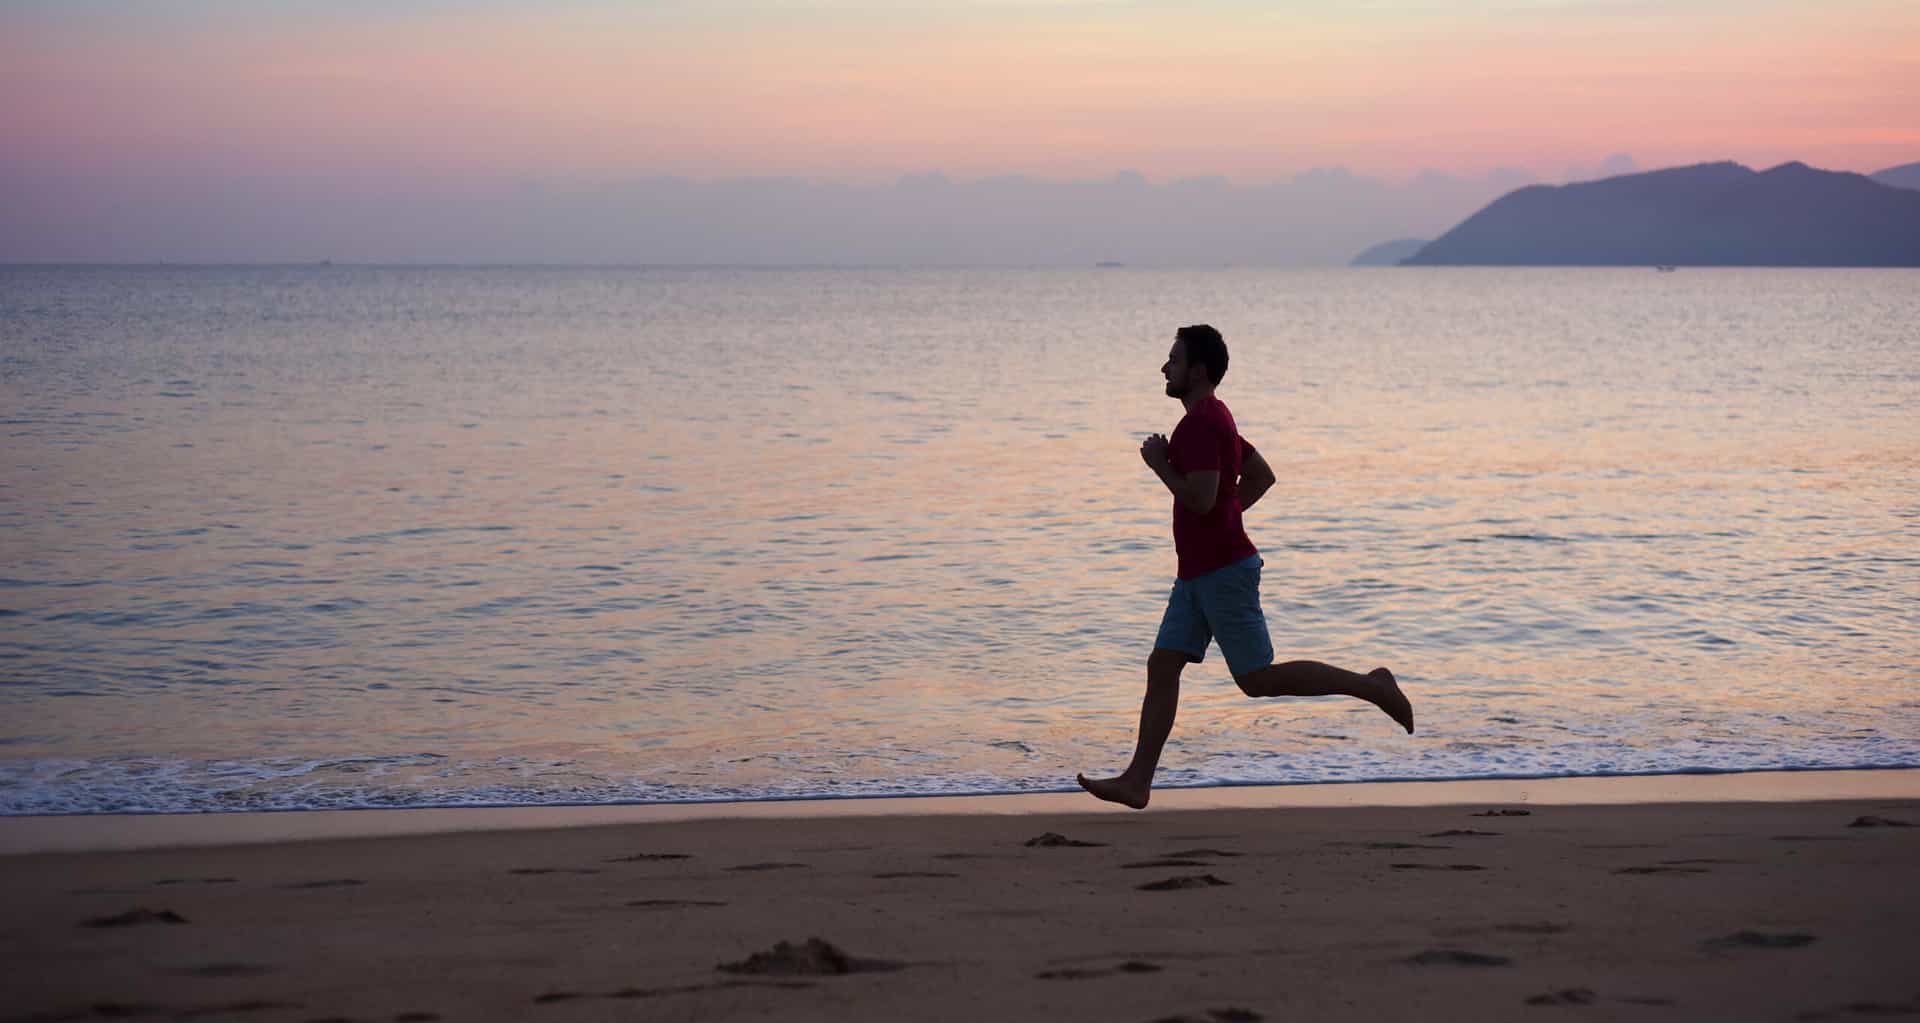 Exercícios cardiorrespiratórios na prevenção do câncer – man running on the beach 2021 08 26 12 08 05 utc 1